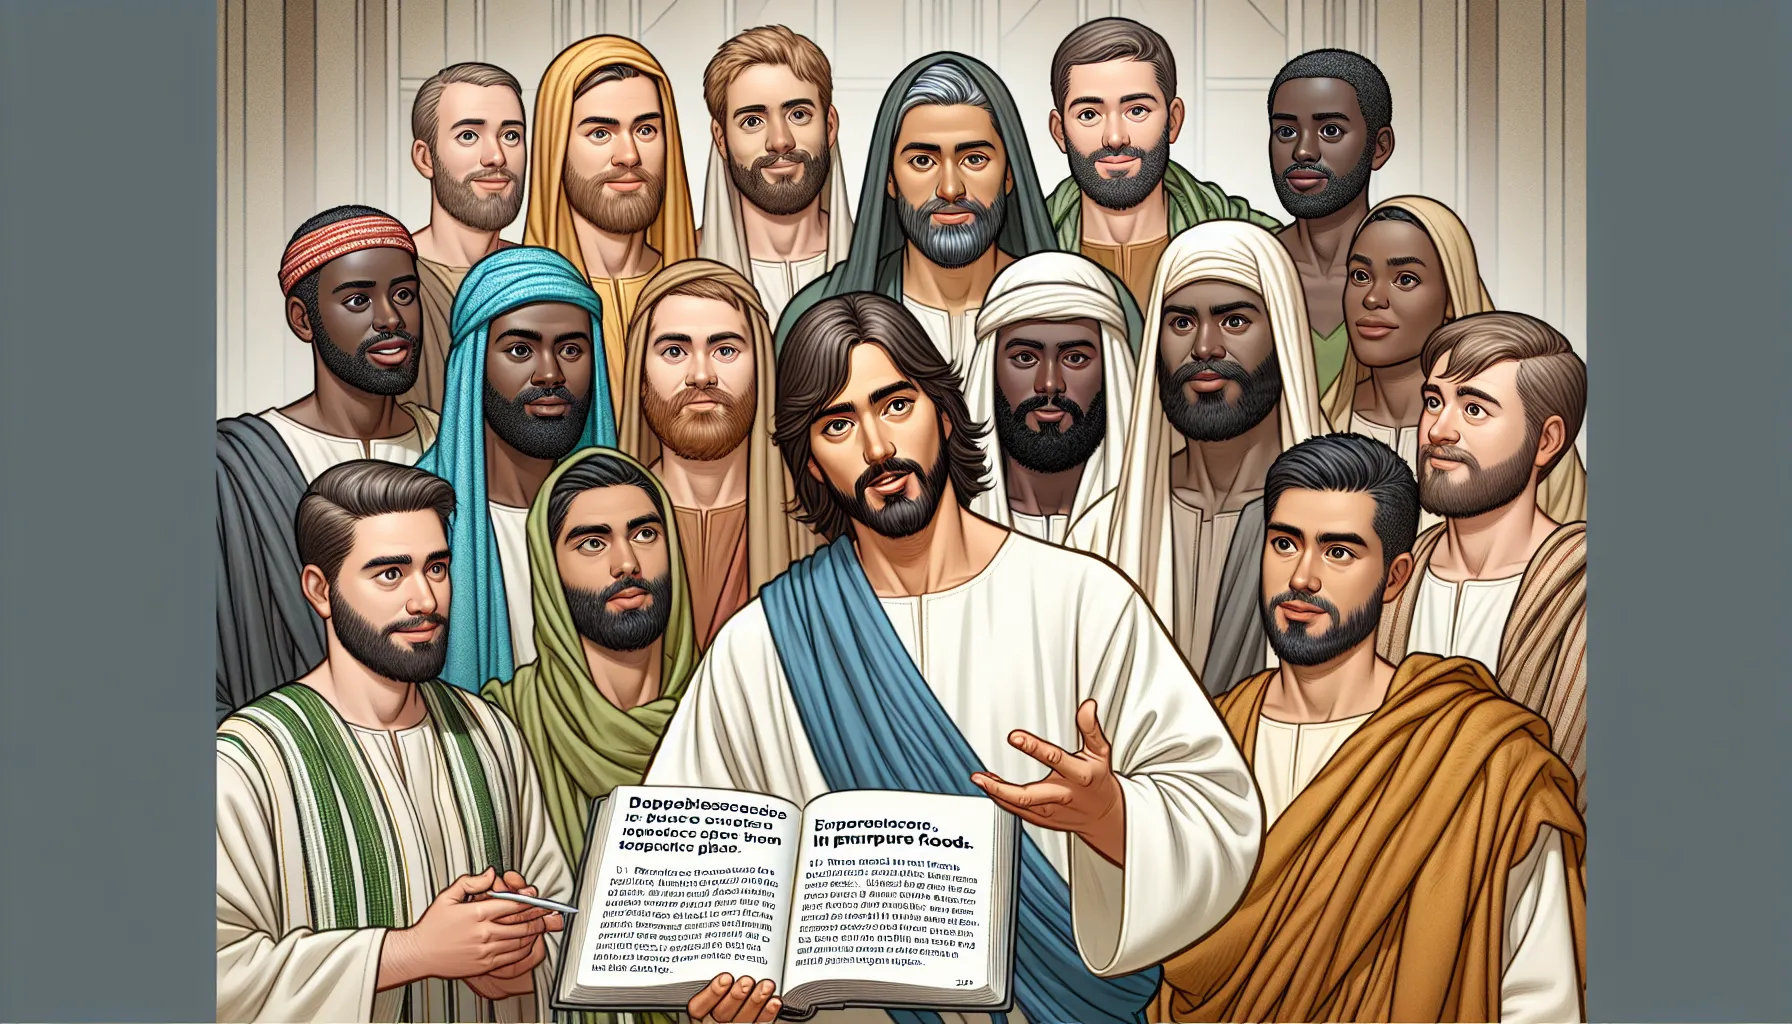 Imagen de Jesús enseñando a sus discípulos sobre los alimentos impuros